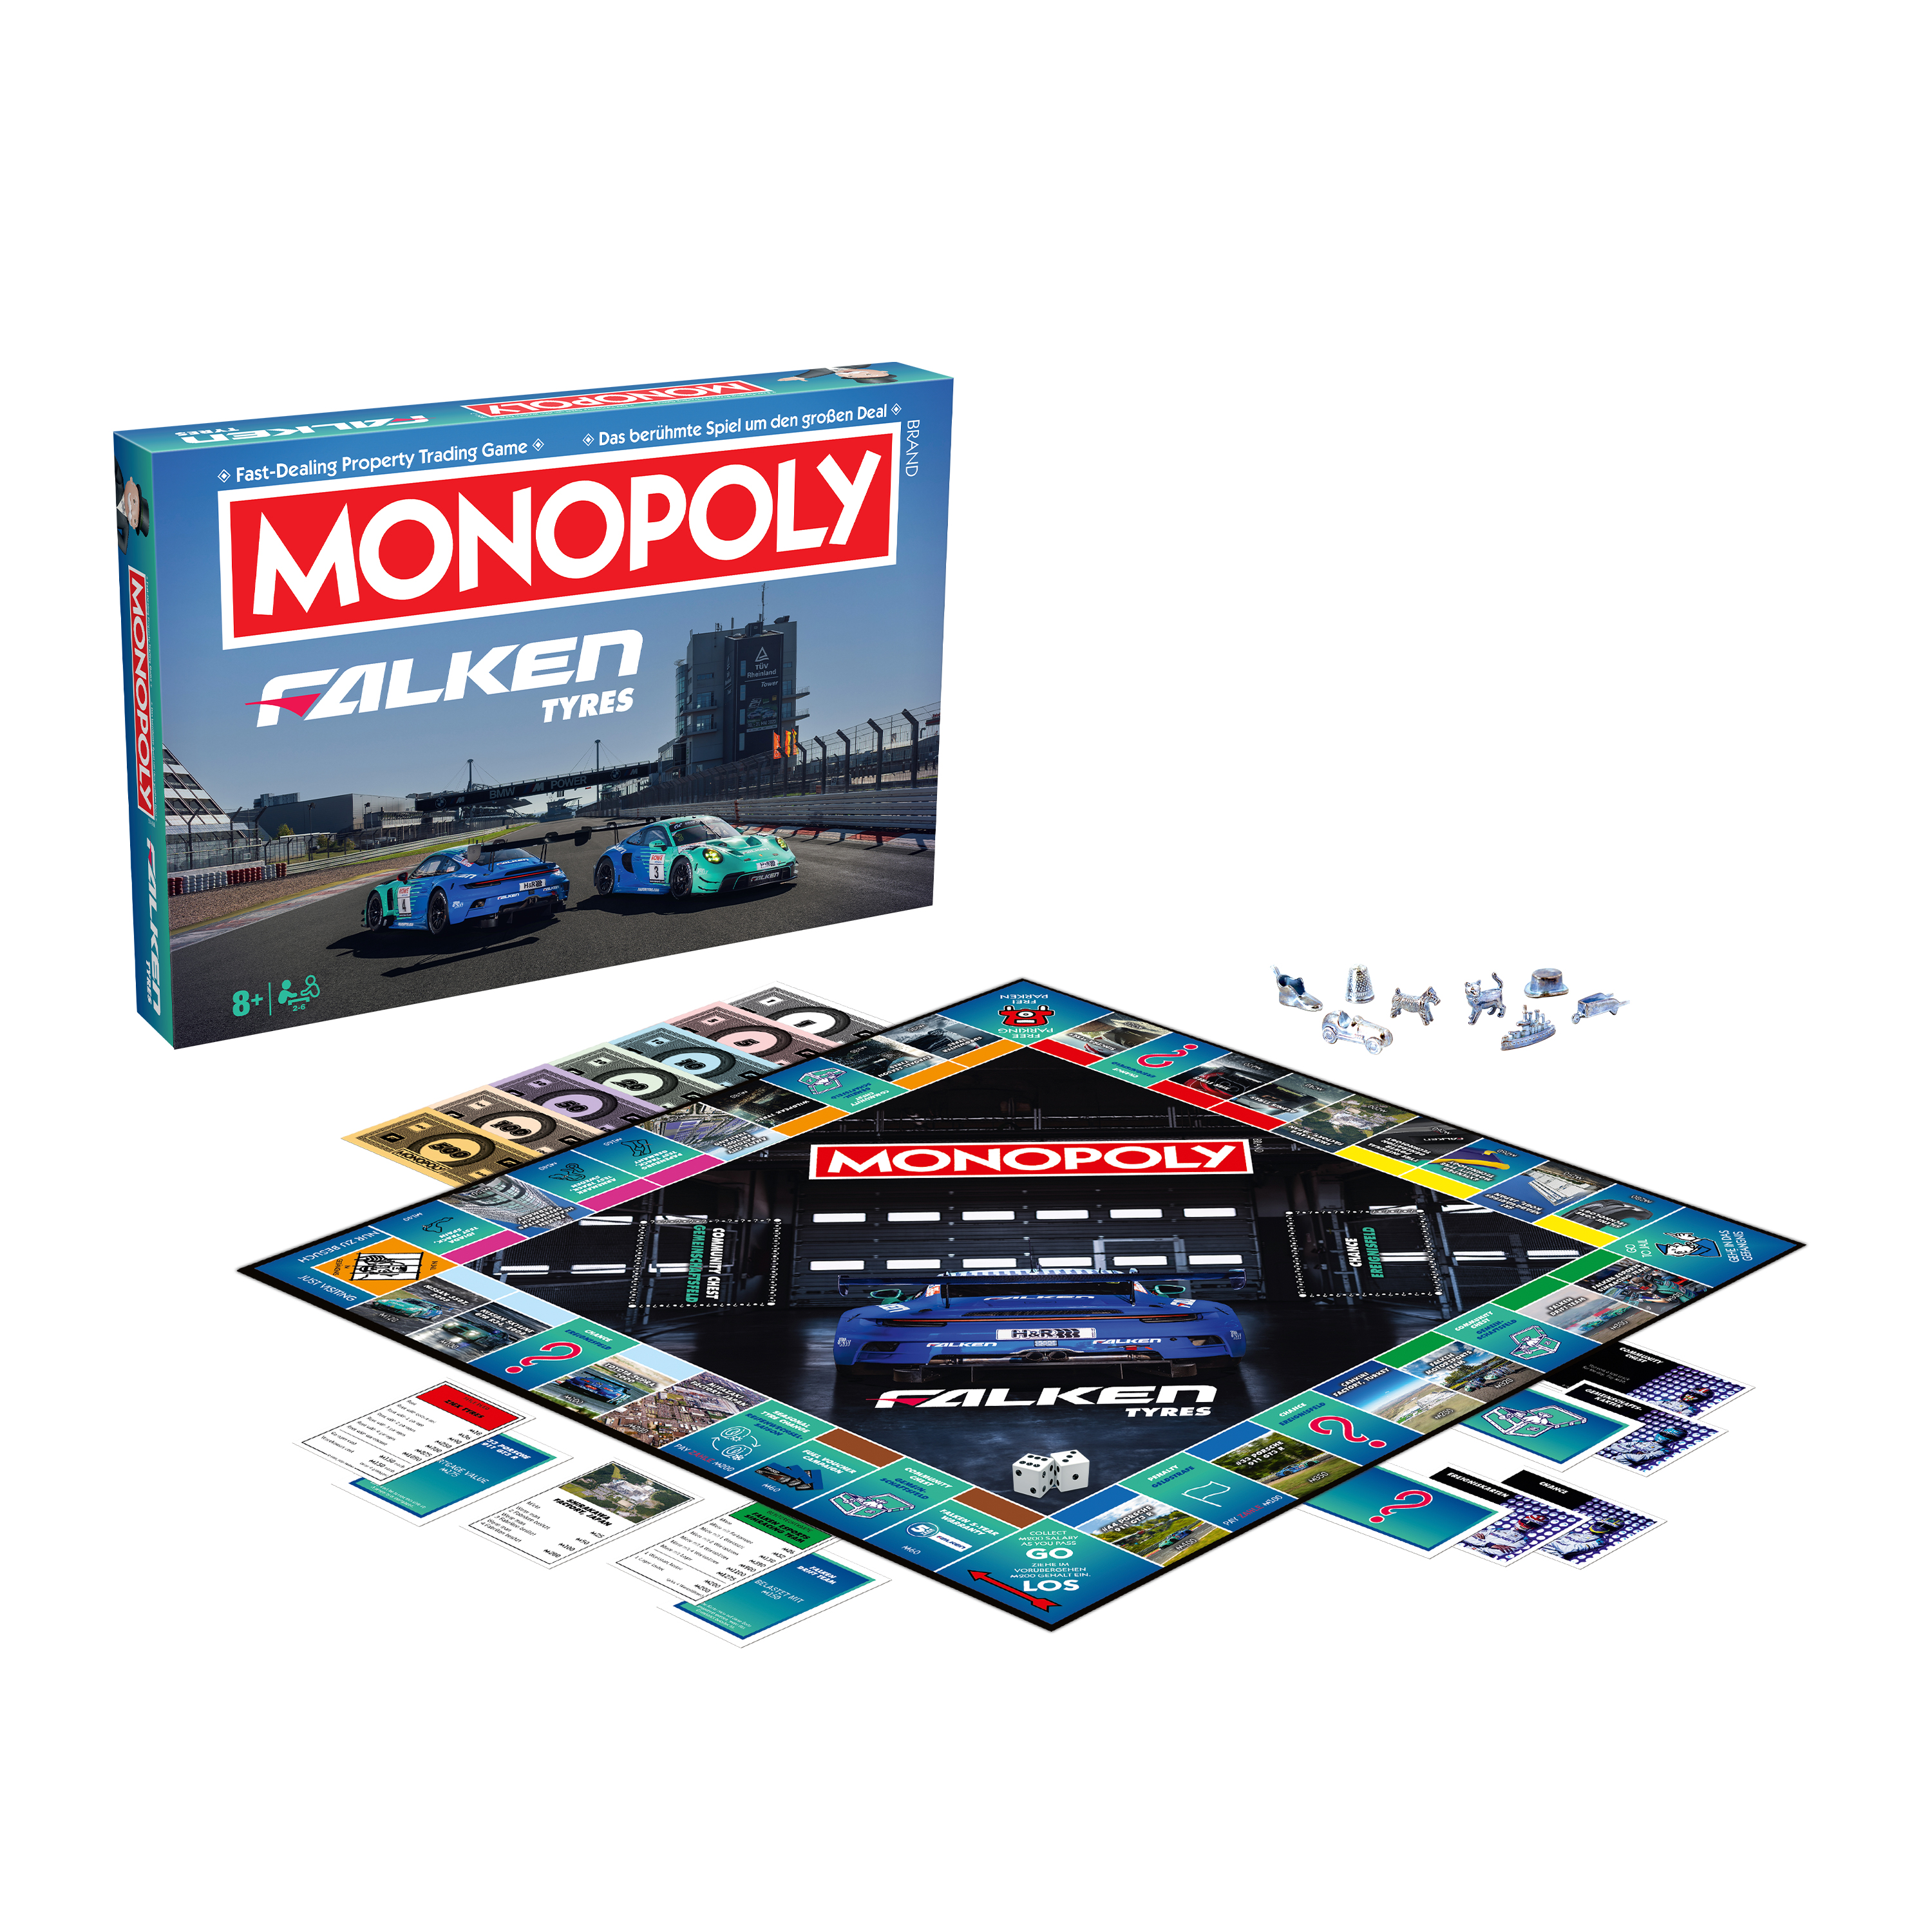 FALKEN Monopoly 